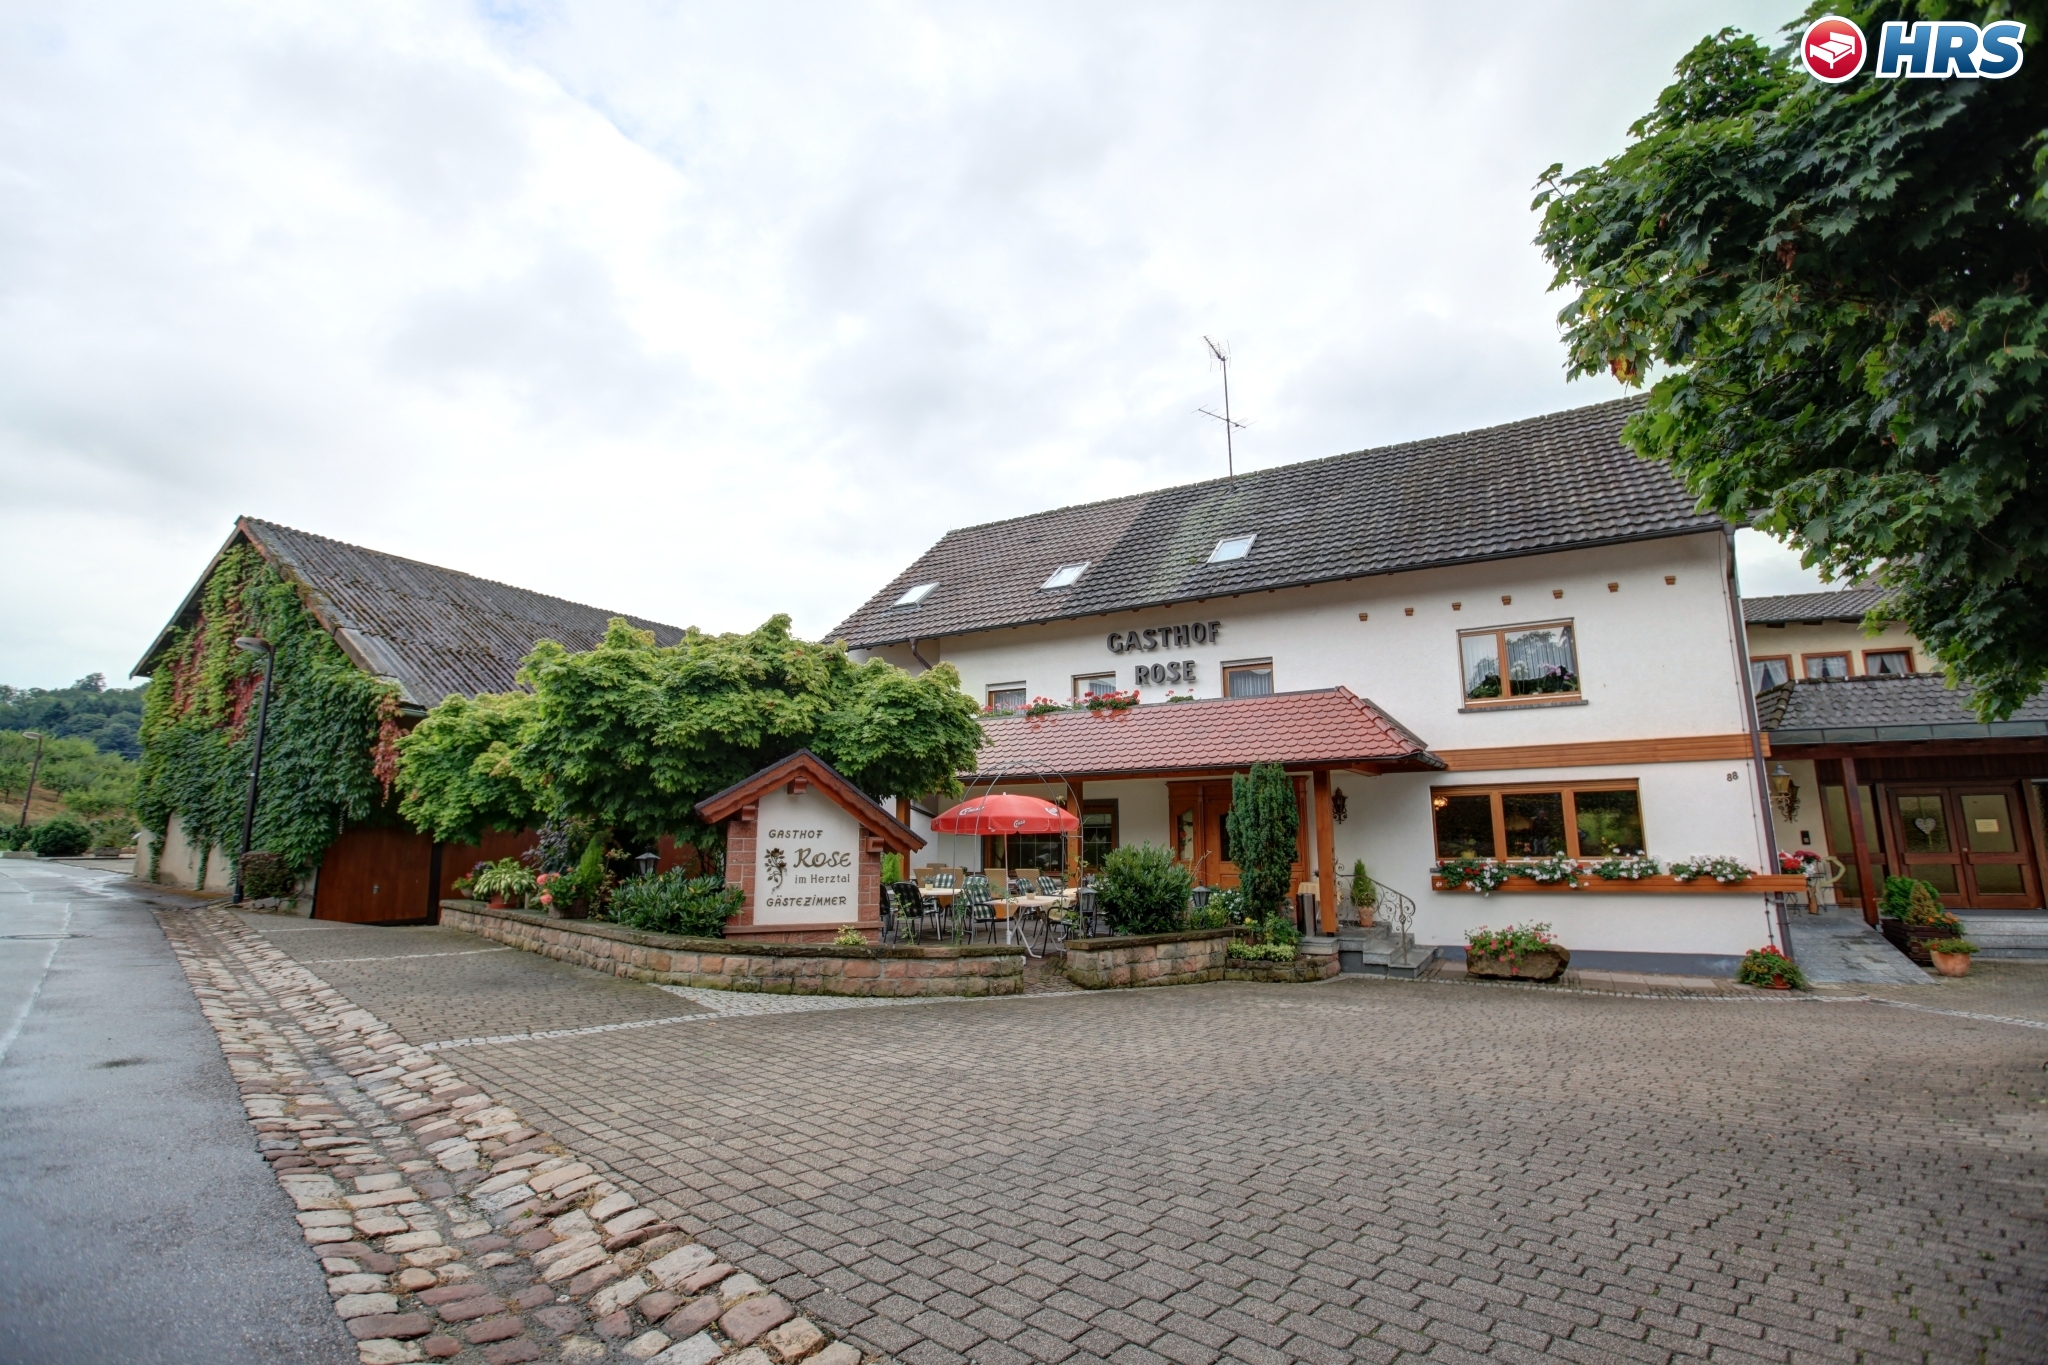 Hotel Rose Gasthof in Oberkirch bei HRS günstig buchen